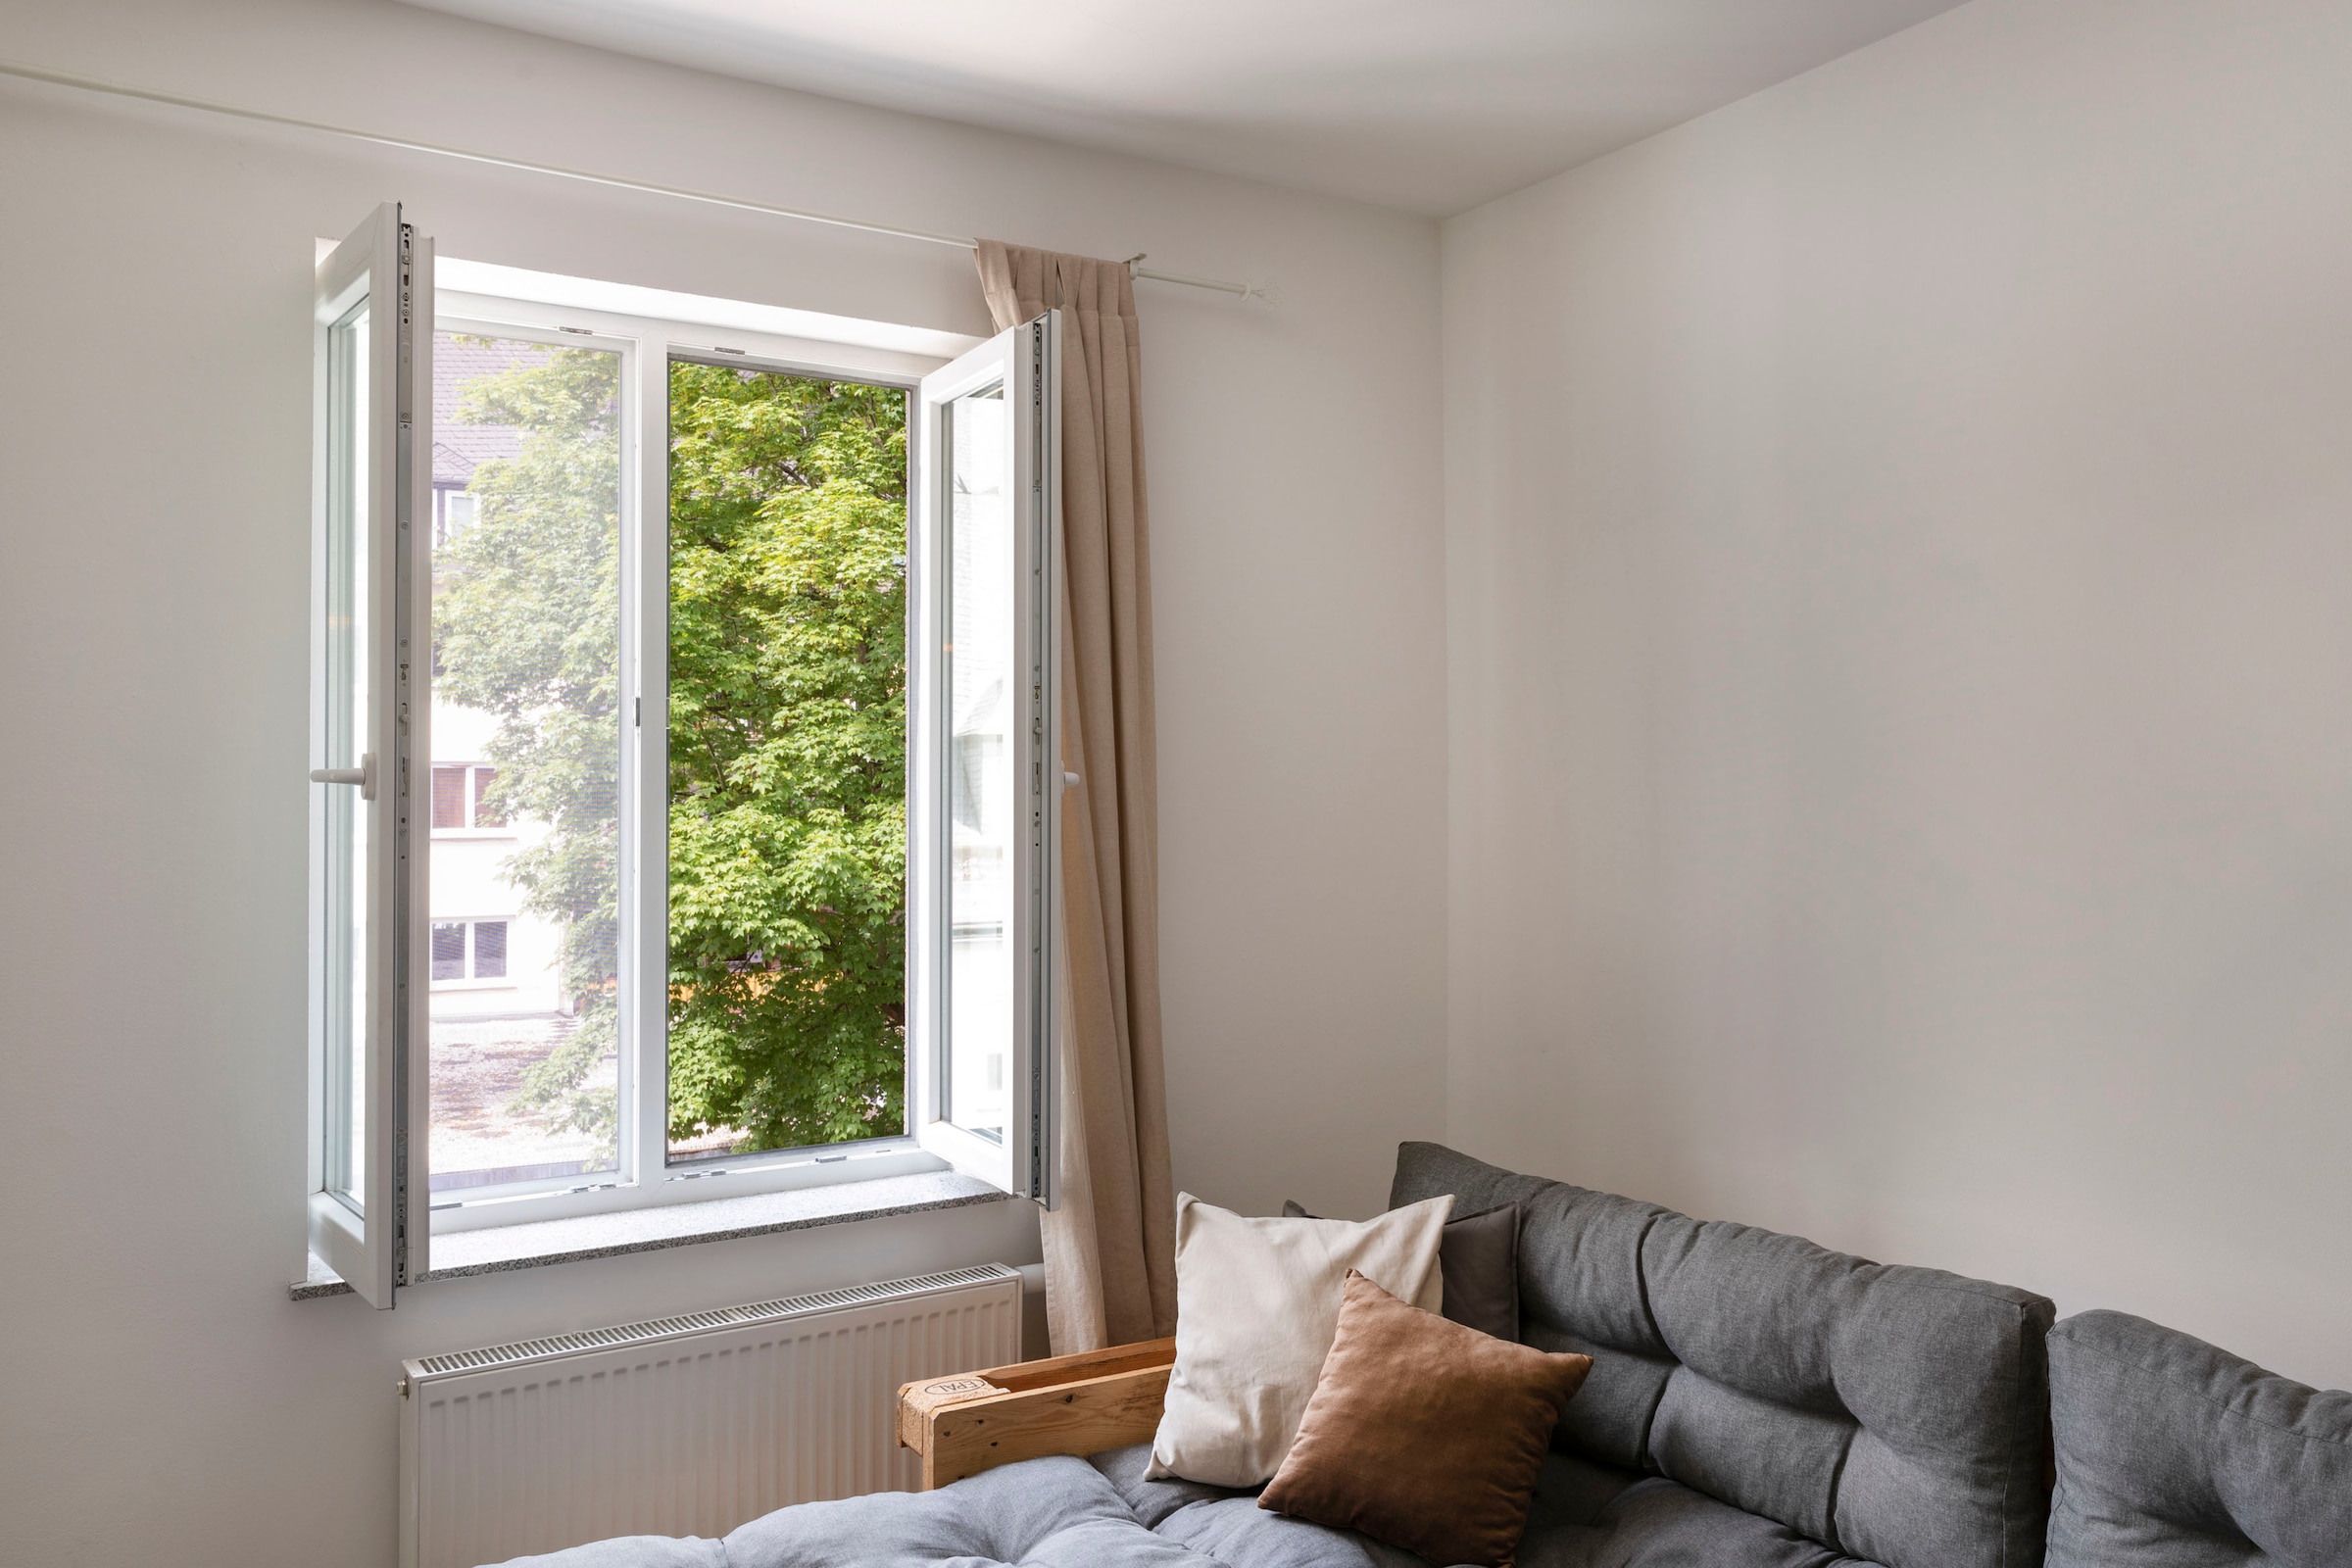 SCHELLENBERG Fliegengitter-Gewebe »50712«, mit Klettband, für Fenster, ohne bohren, 100x130 cm, weiß